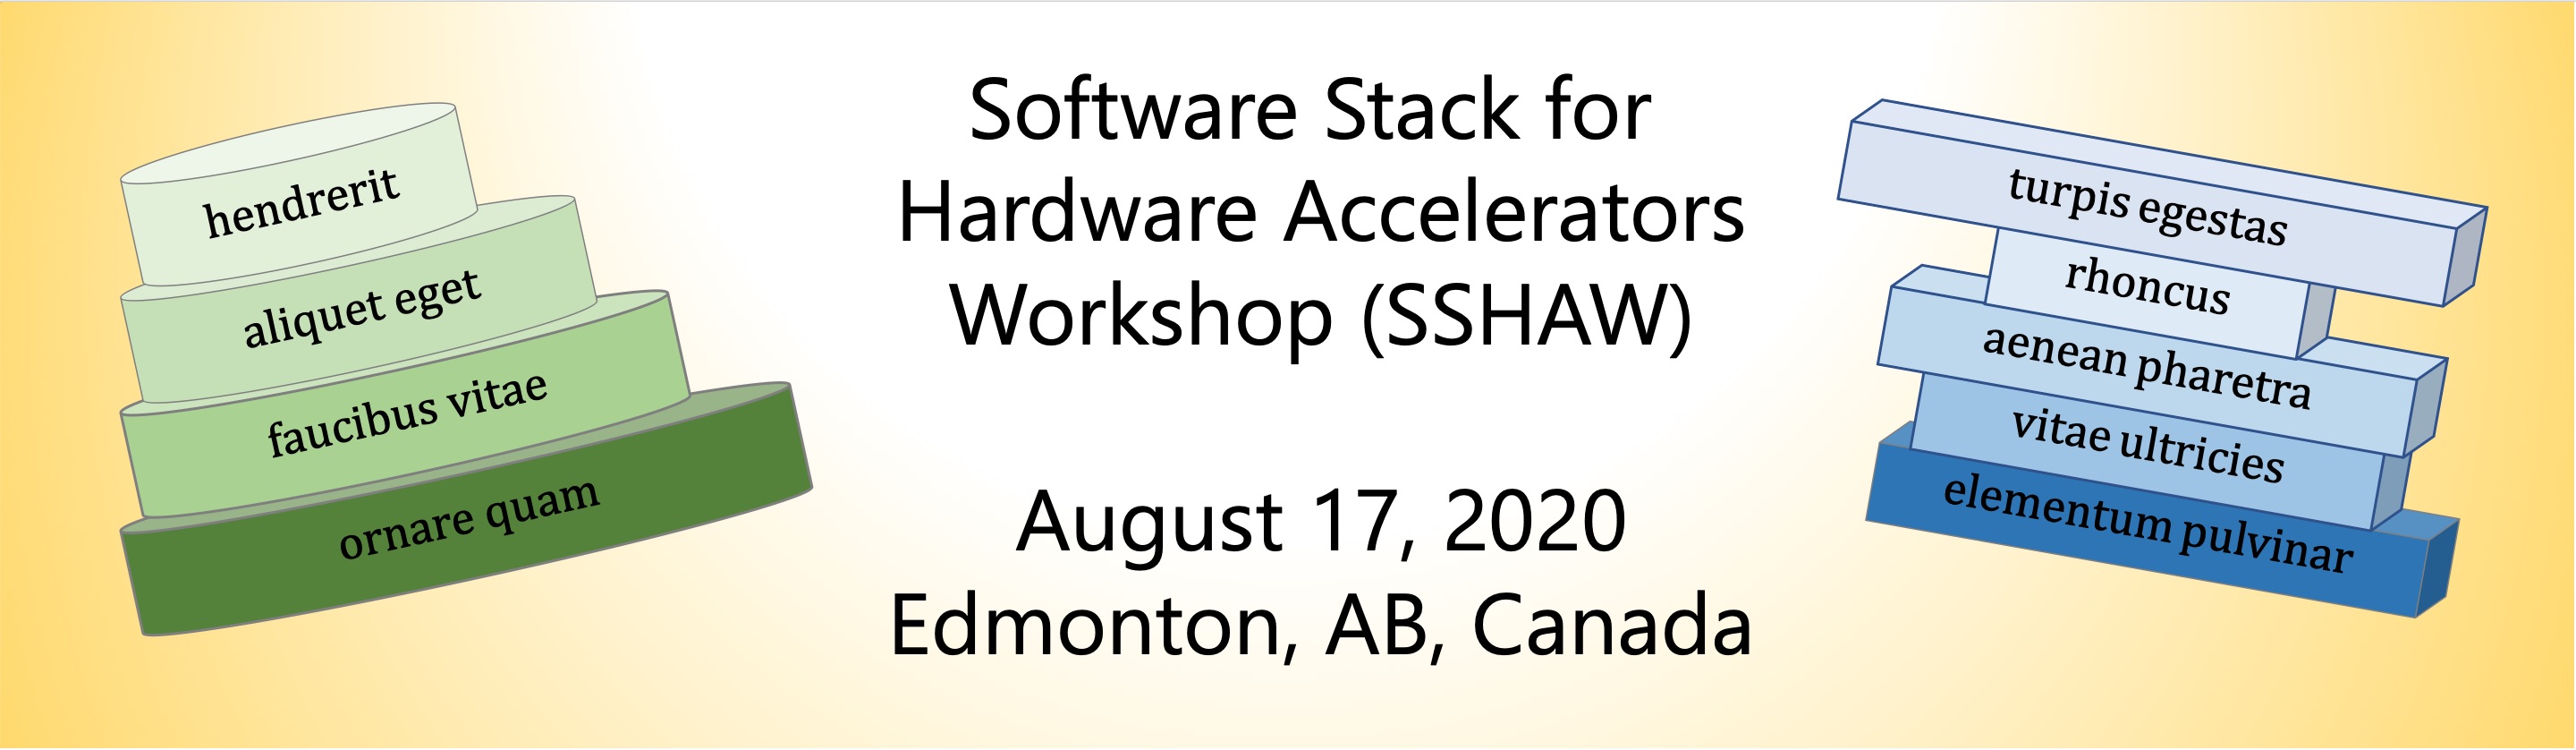 Software Stack for Hardware Accelerators Workshop (SSHAW)